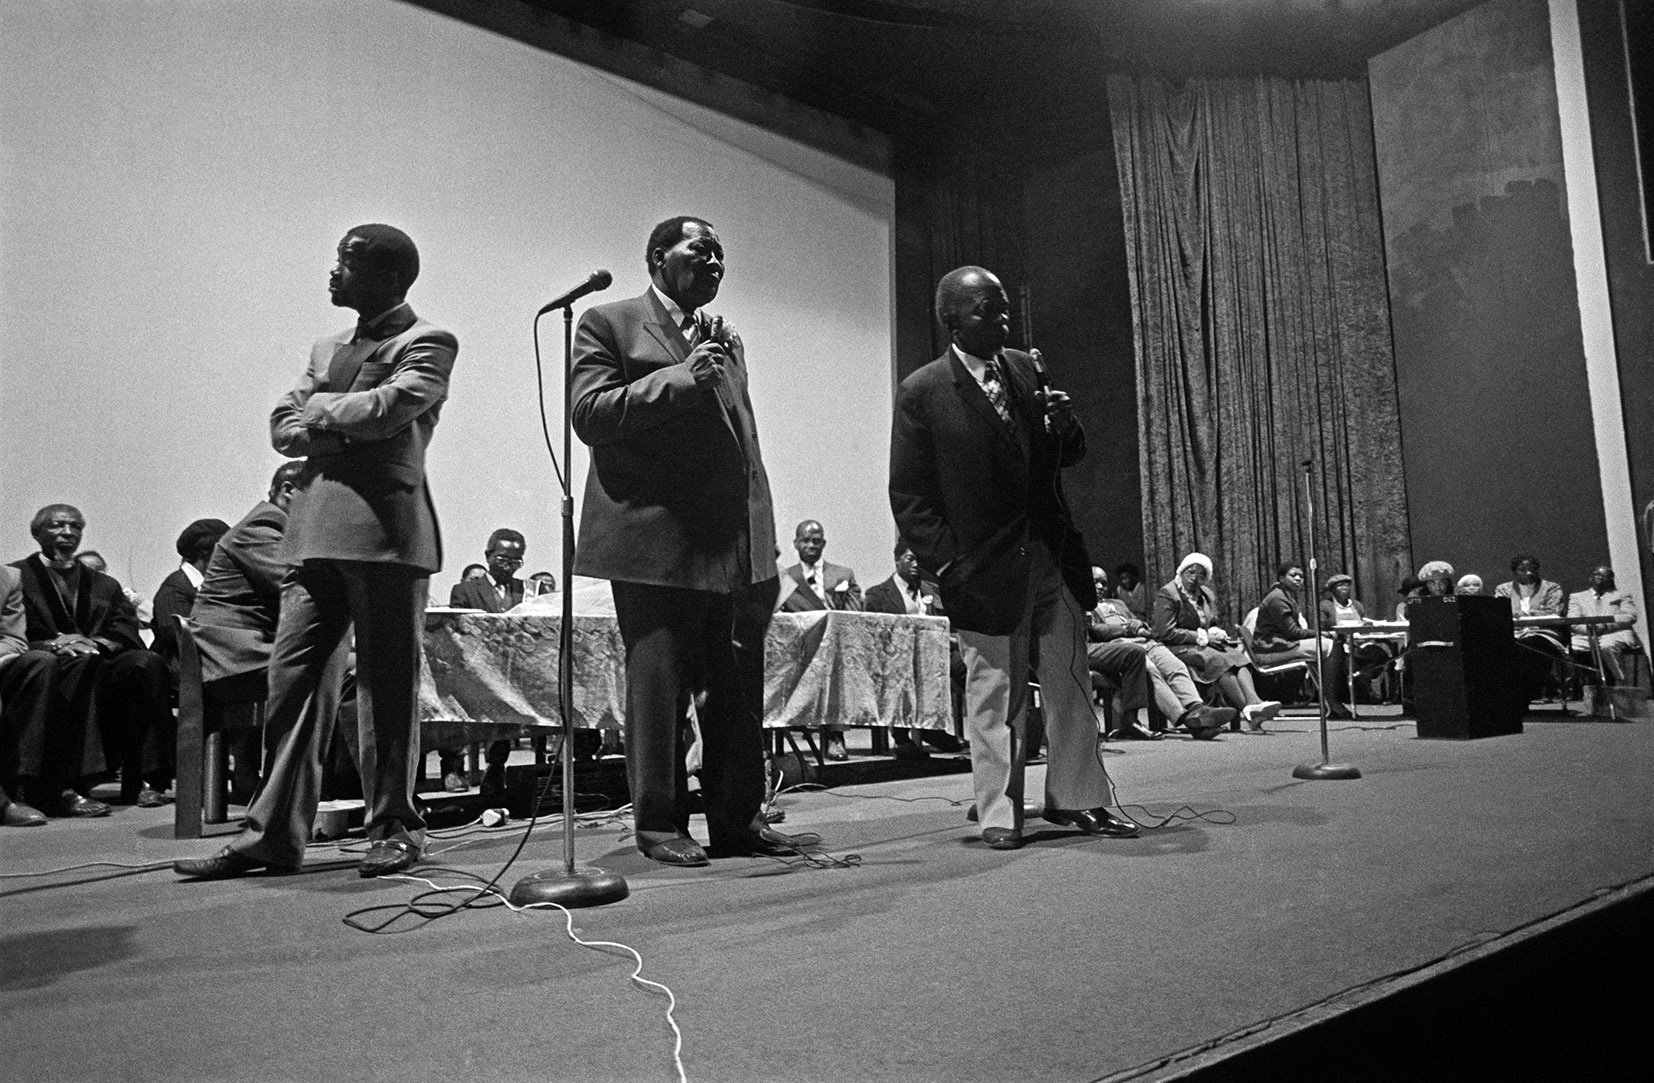  Mayor Ephraim 'E.T.' Tshabalala at Eyethru Cinema, Mofolo, Soweto/ c.1986 